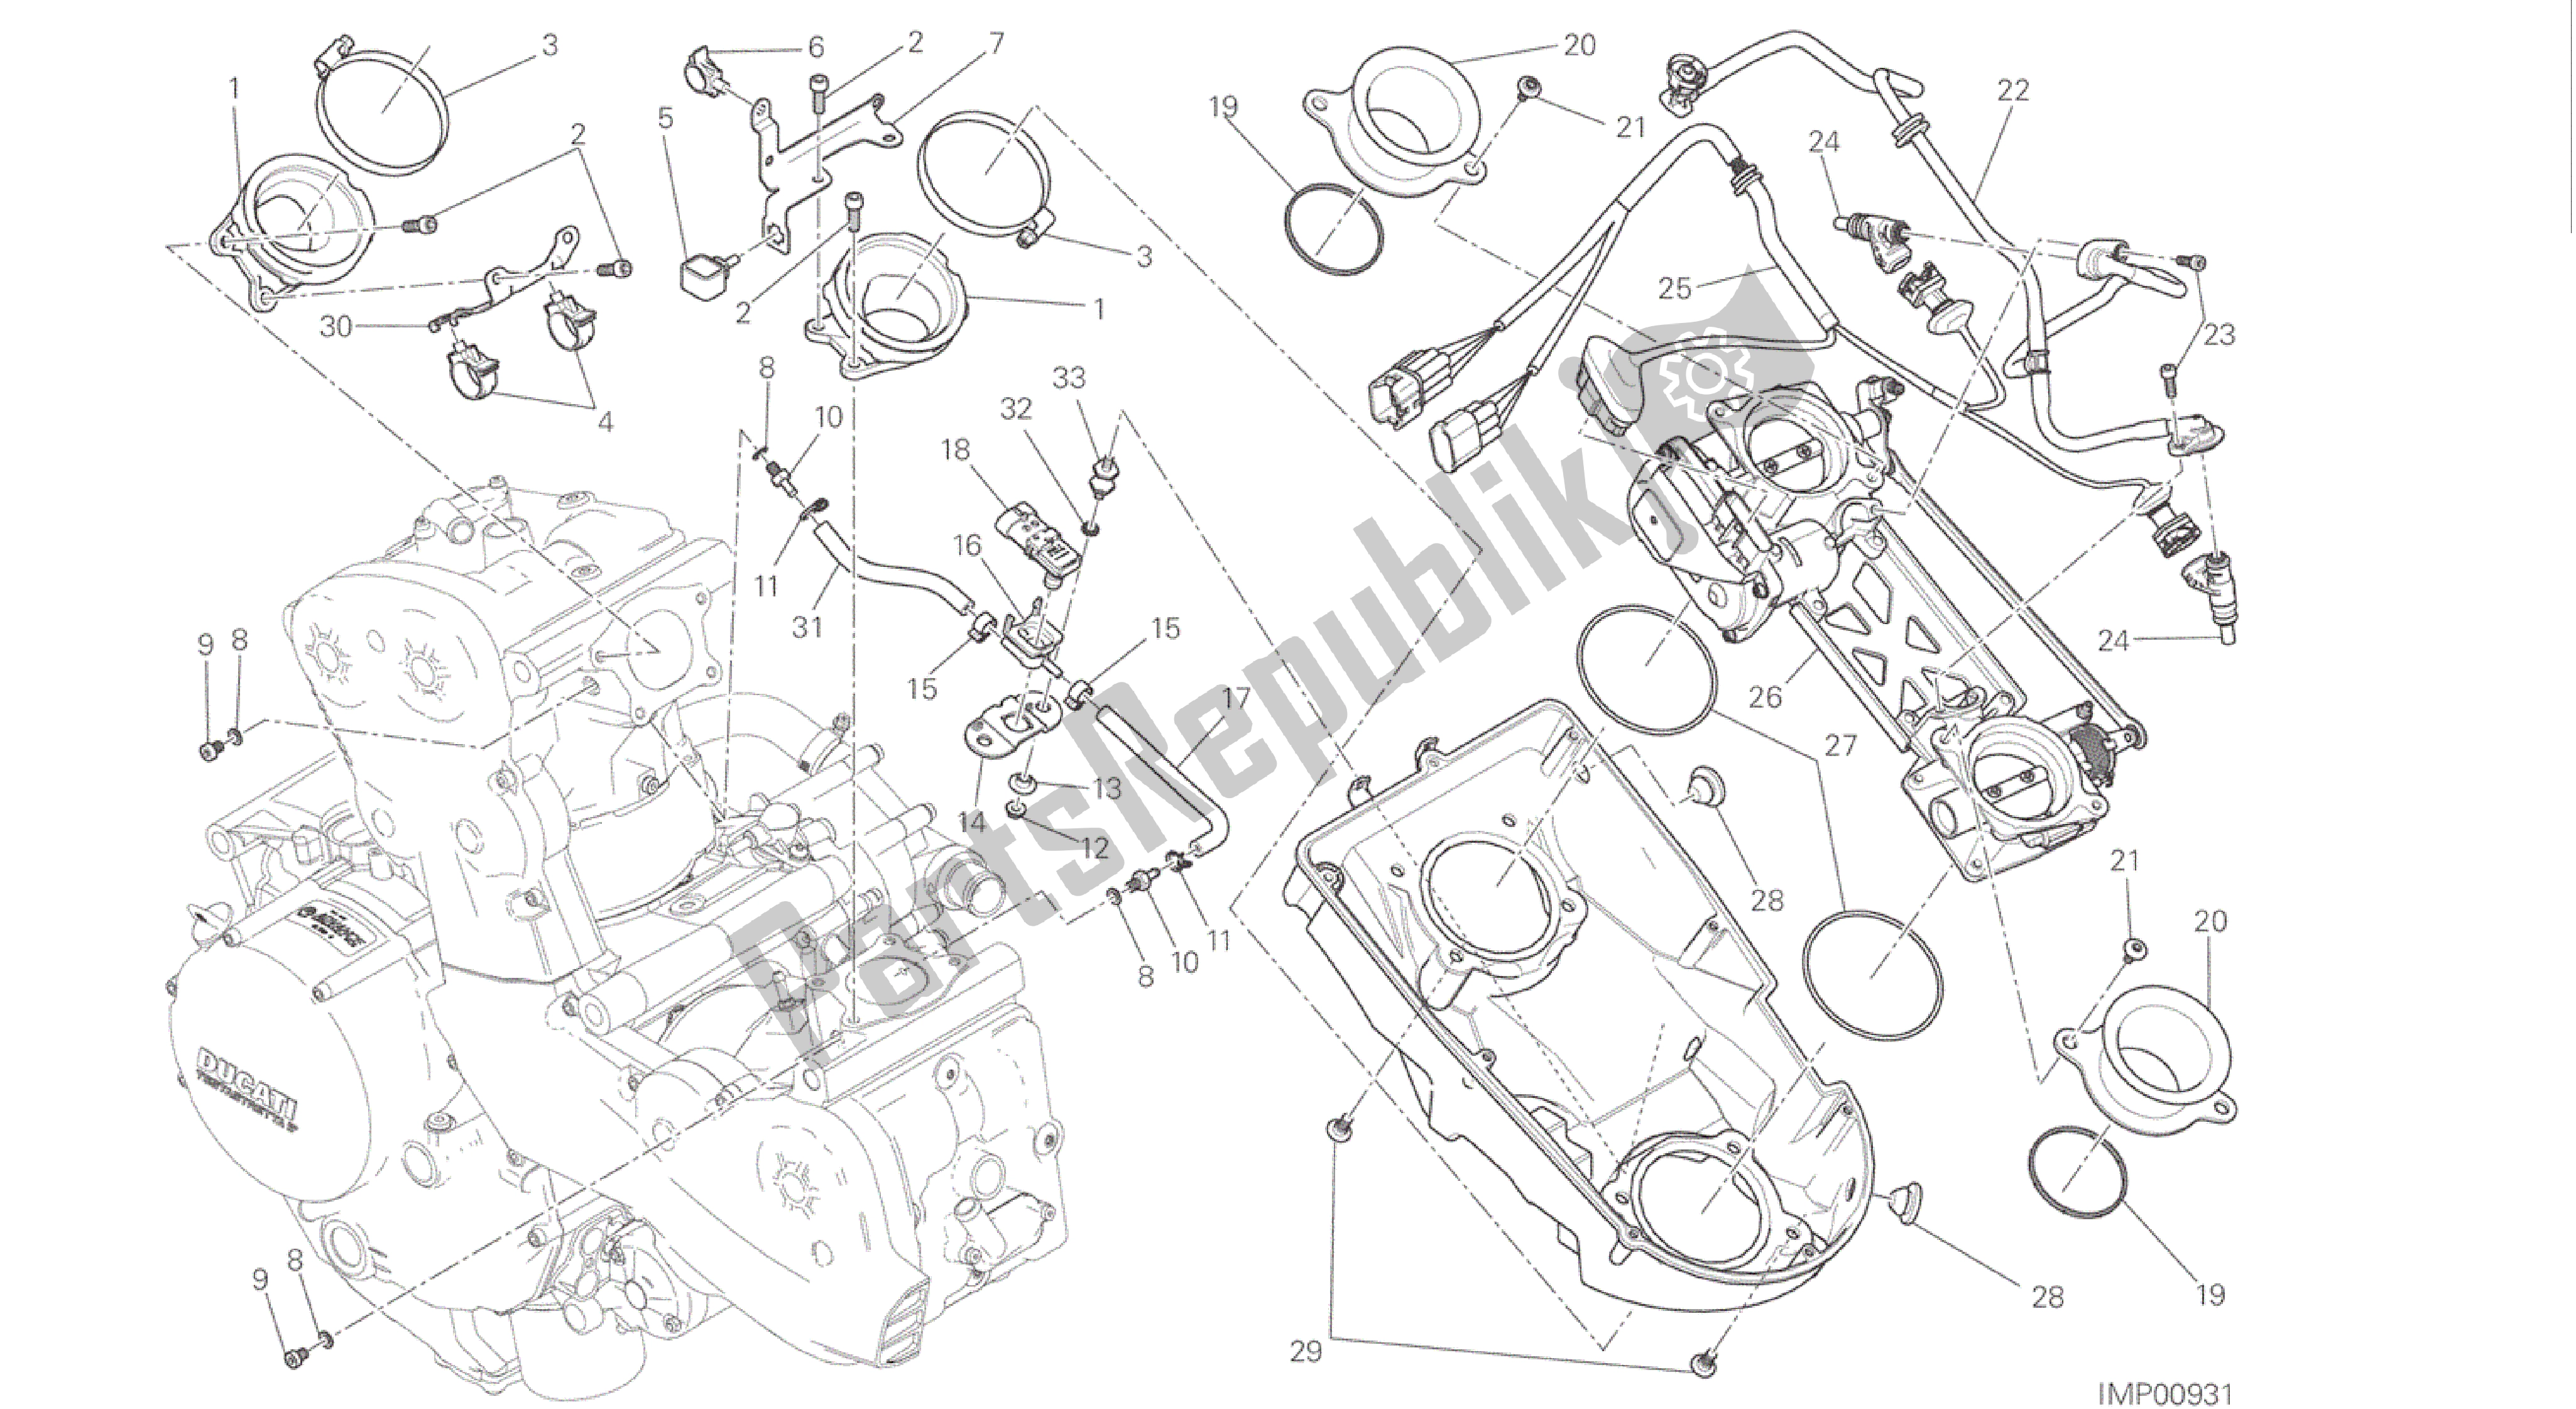 Alle onderdelen voor de Tekening 017 - Gasklephuis [mod: M 1200; Xst: Aus, Bra, Eur, Fra, Jap] Groepsframe van de Ducati Monster 1200 2016